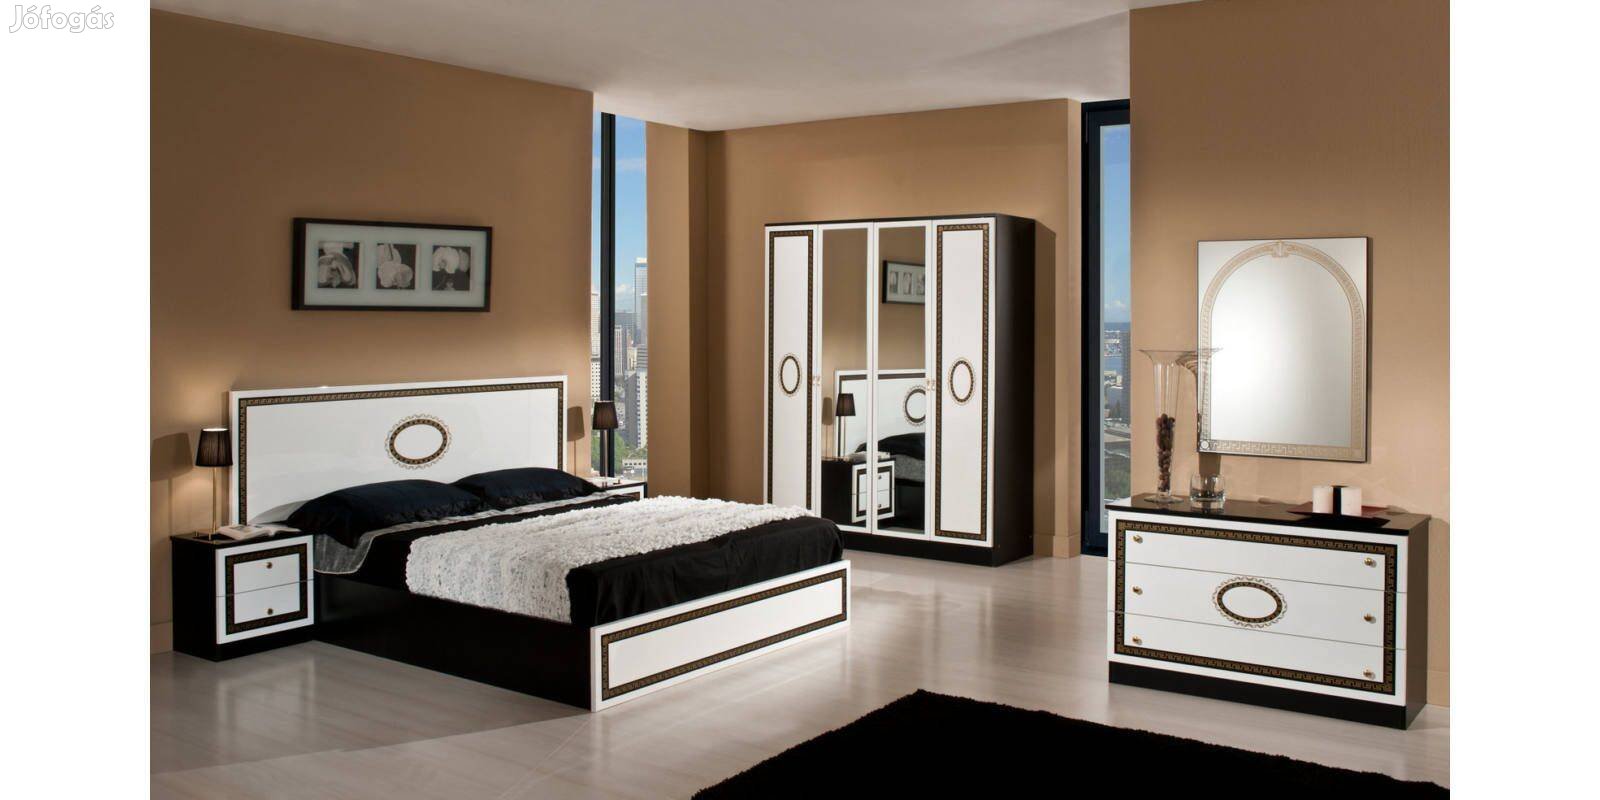 DI - Paris (fekete-fehér) olasz modern hálószoba bútor Akció!